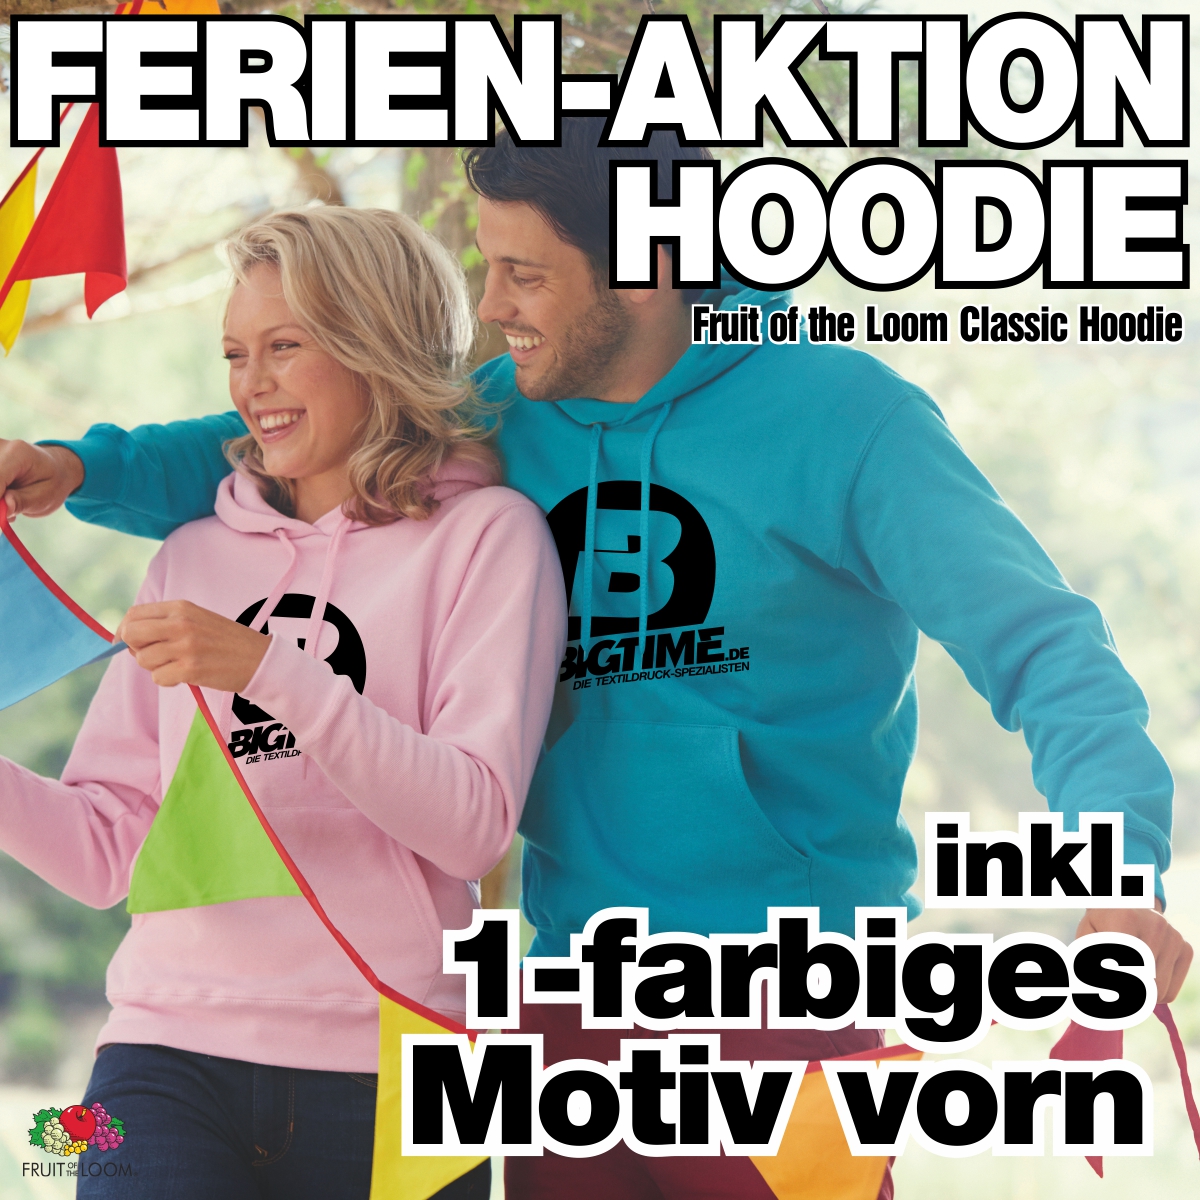 Ferien-Aktion, Erwachsenen-Hoodie inkl. 1-farbigem Motiv